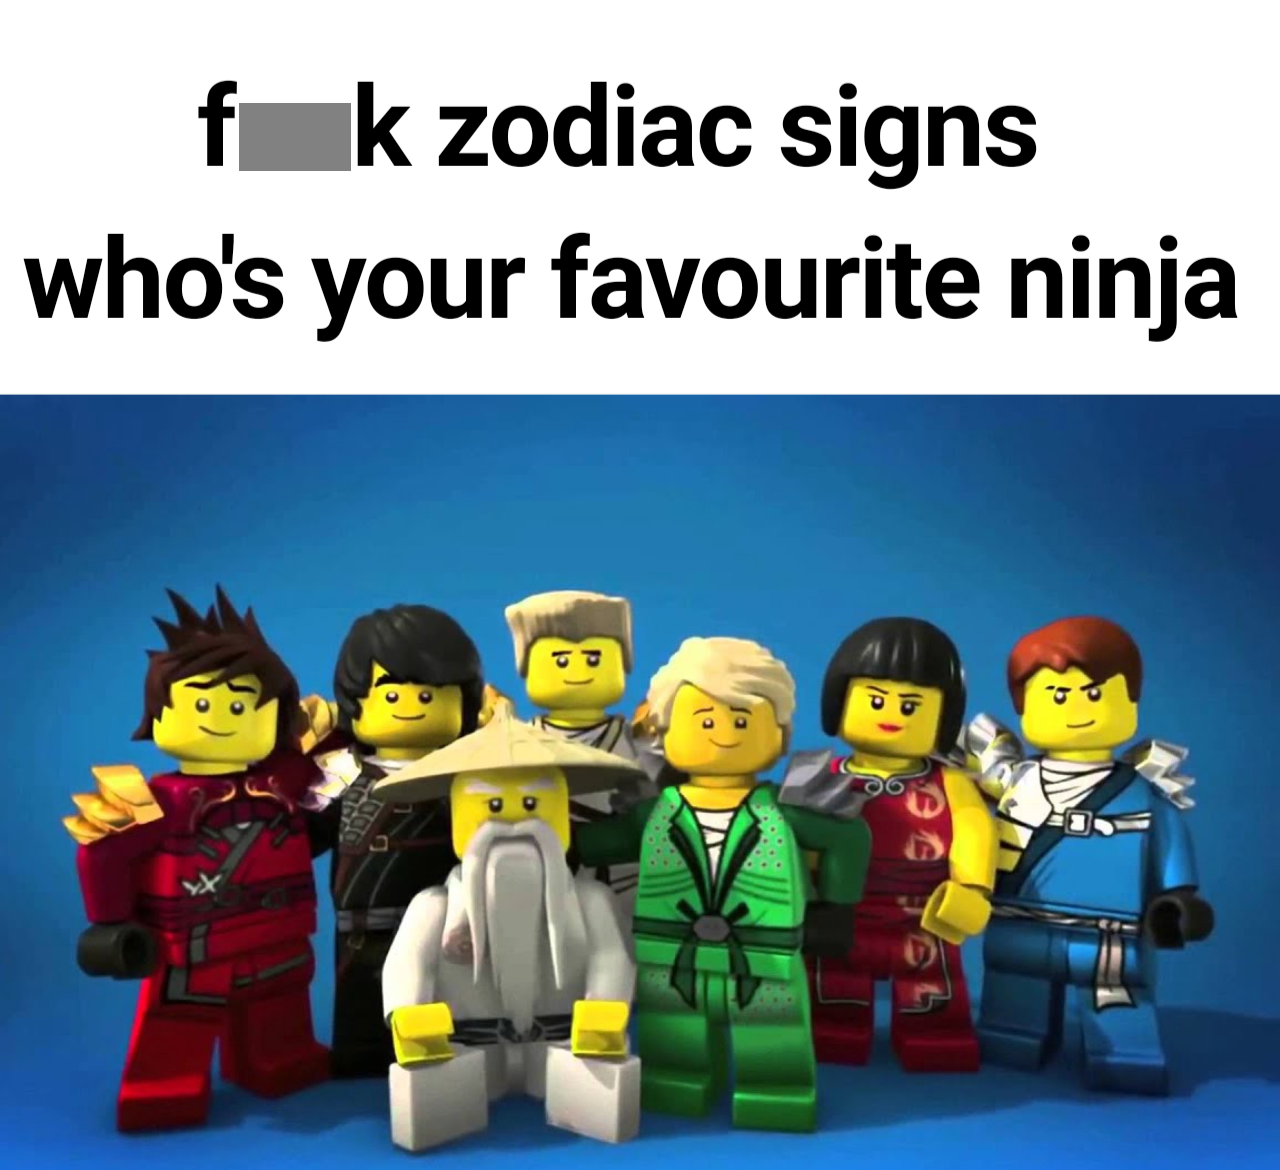 lego ninjago all the ninjas - f k zodiac signs who's your favourite ninja